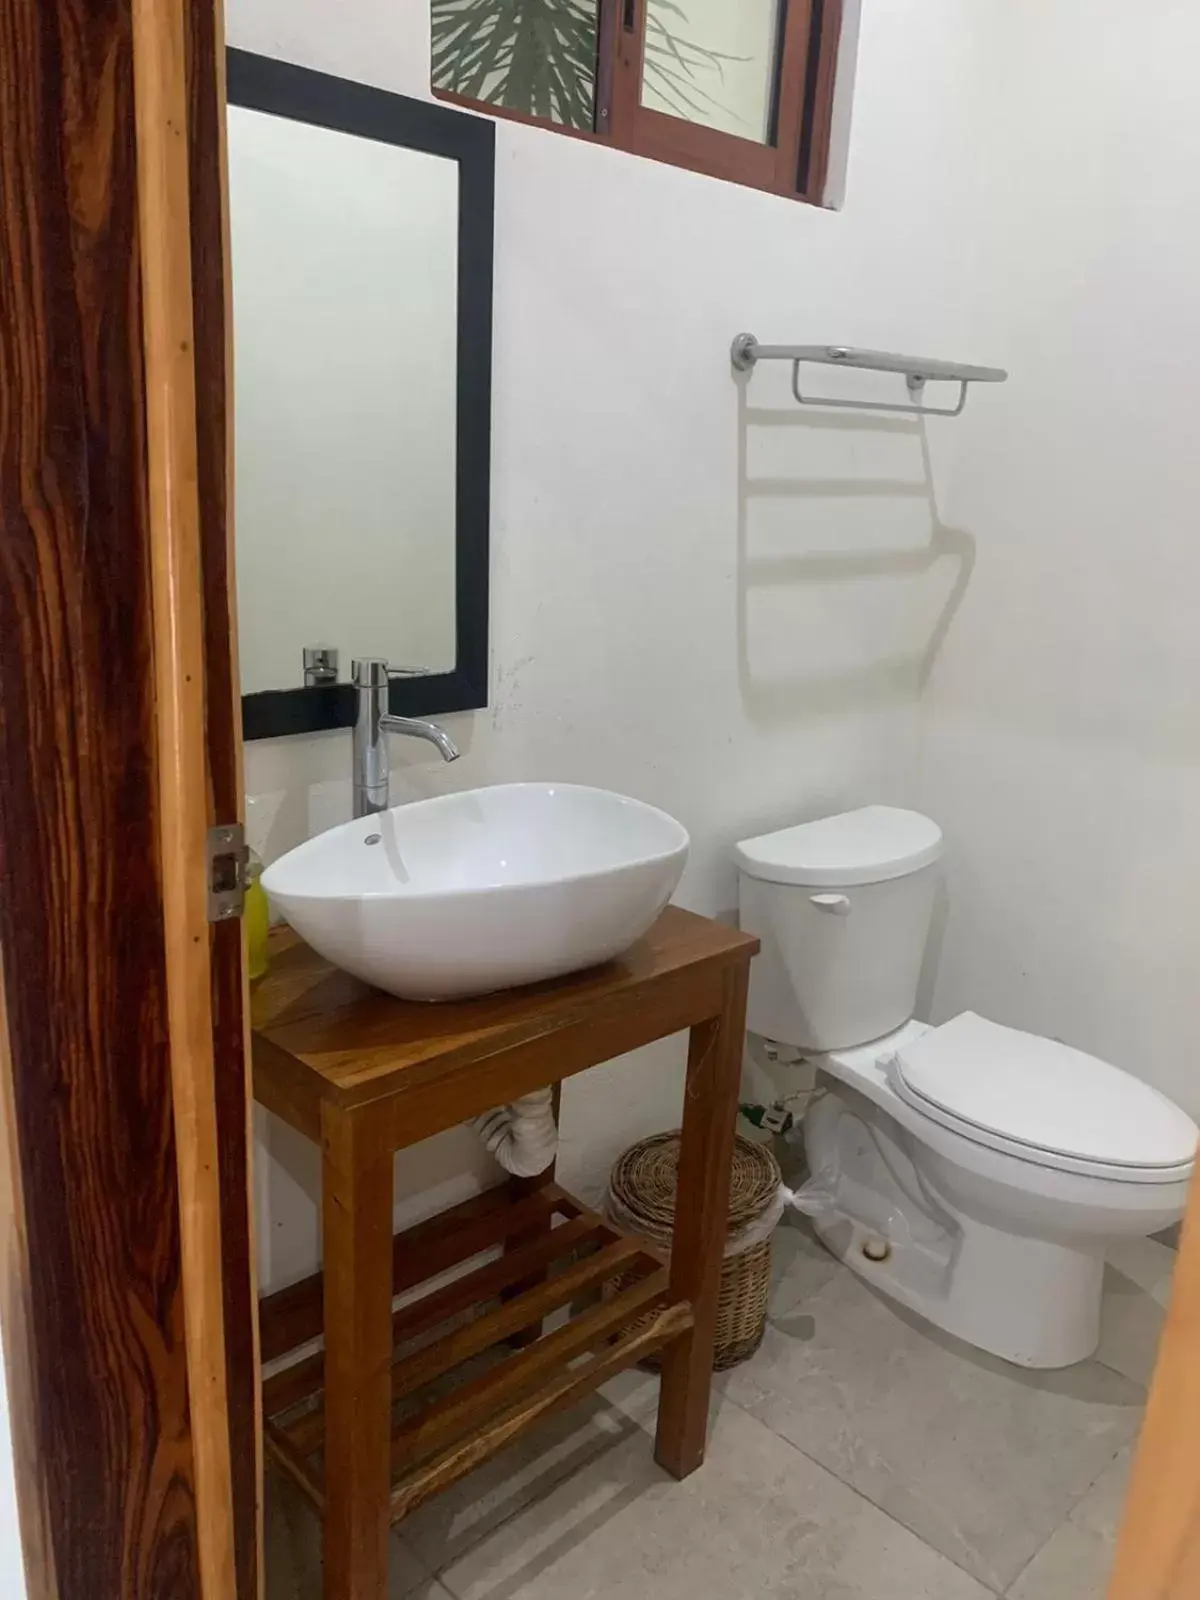 Bathroom in Los Arcos Hotel - TULUM